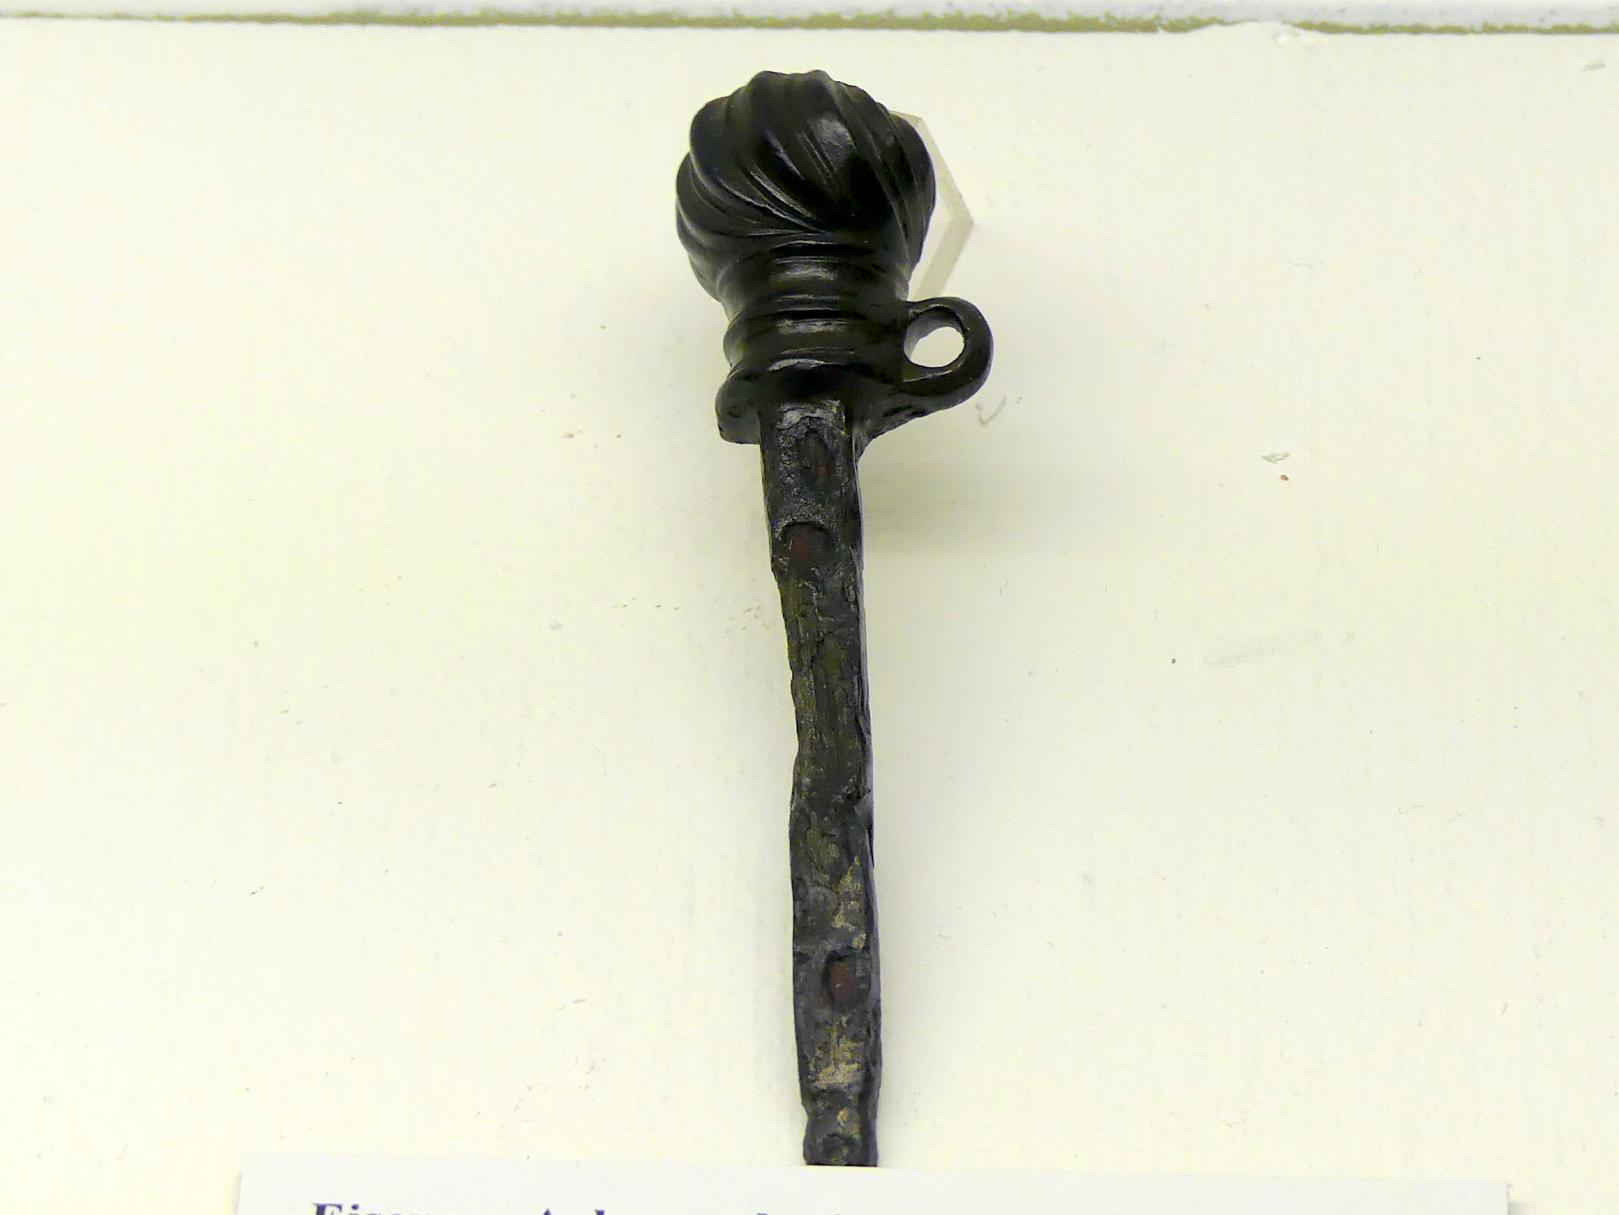 Eisener Achsnagel mit verziertem Bronzekopf, Spätlatènezeit D, 700 - 100 v. Chr., Bild 1/2